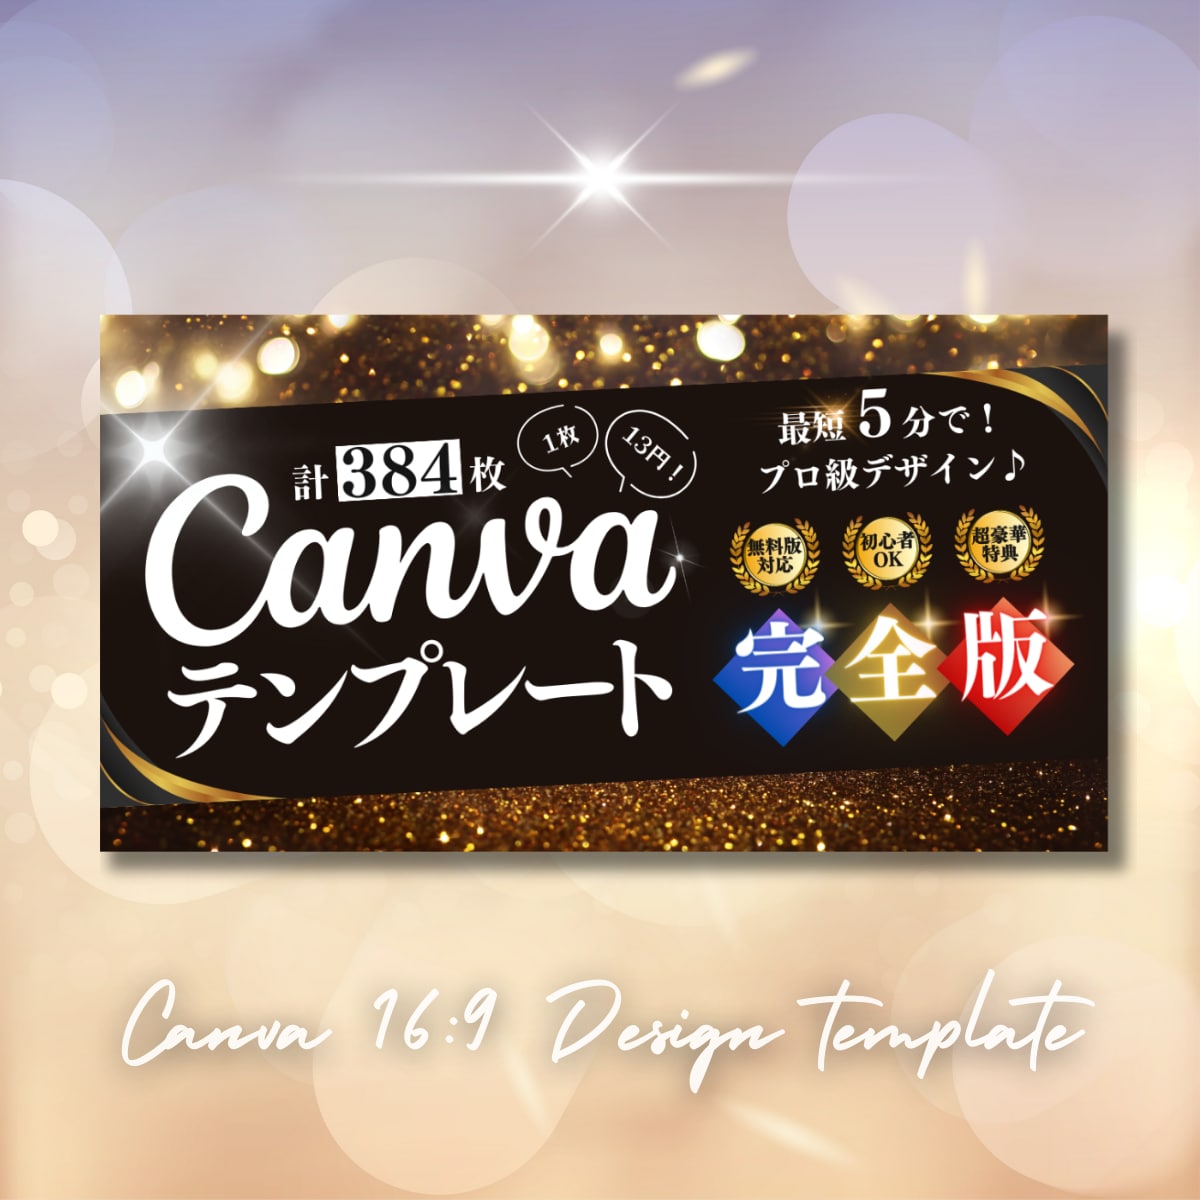 【永久保存】完全版Canva16:9デザインテンプレート集